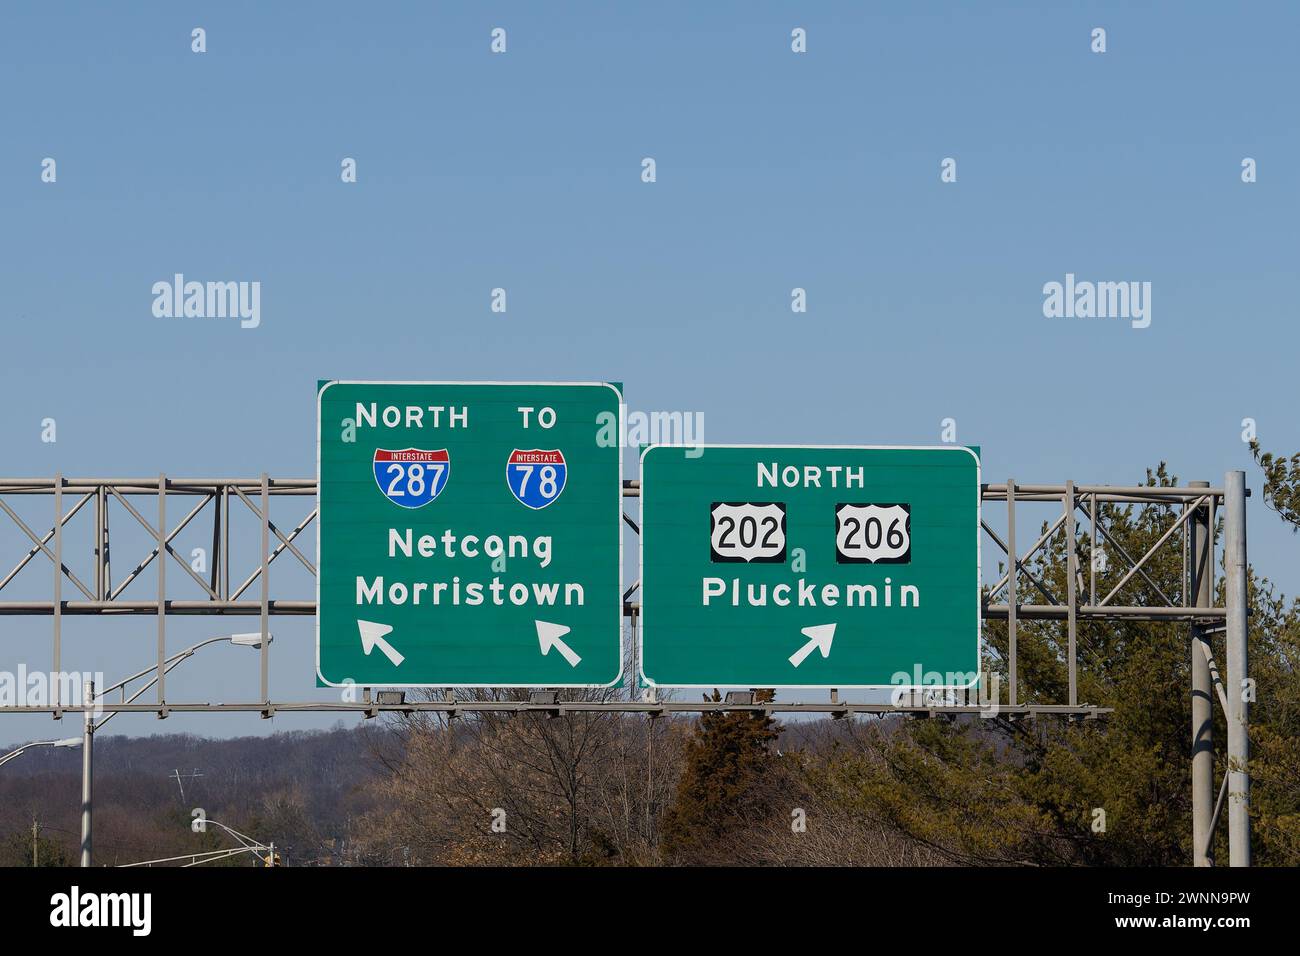 Panneaux de sortie d'autoroute pour l'US-202 North, US-206 North pour Pluckemin, New Jersey et I-287 I-78 North vers Netcong et Morristown, New Jersey Banque D'Images